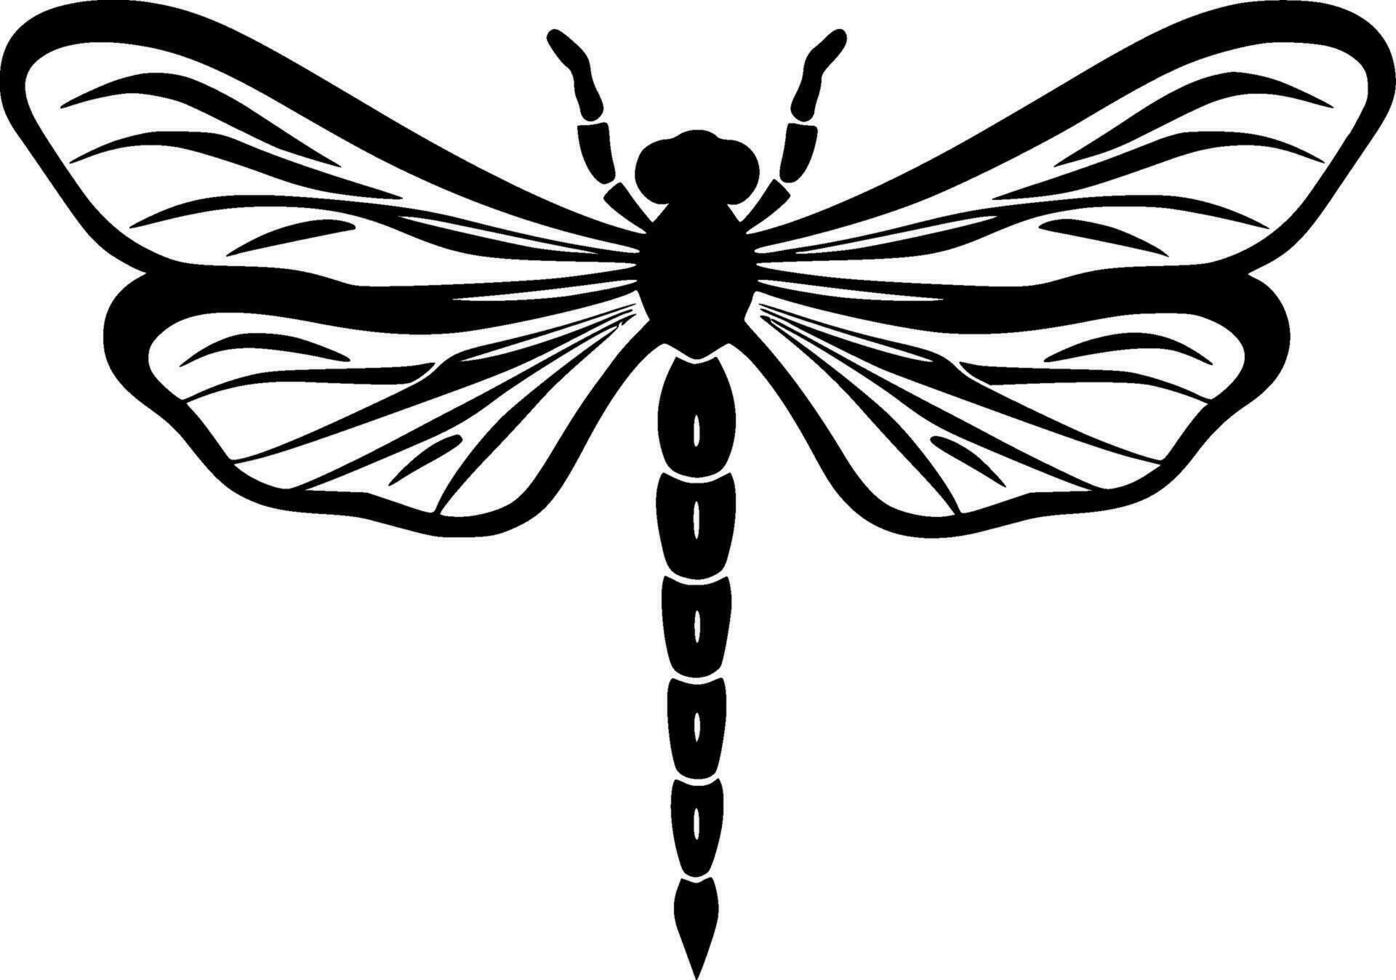 libélula - negro y blanco aislado icono - vector ilustración